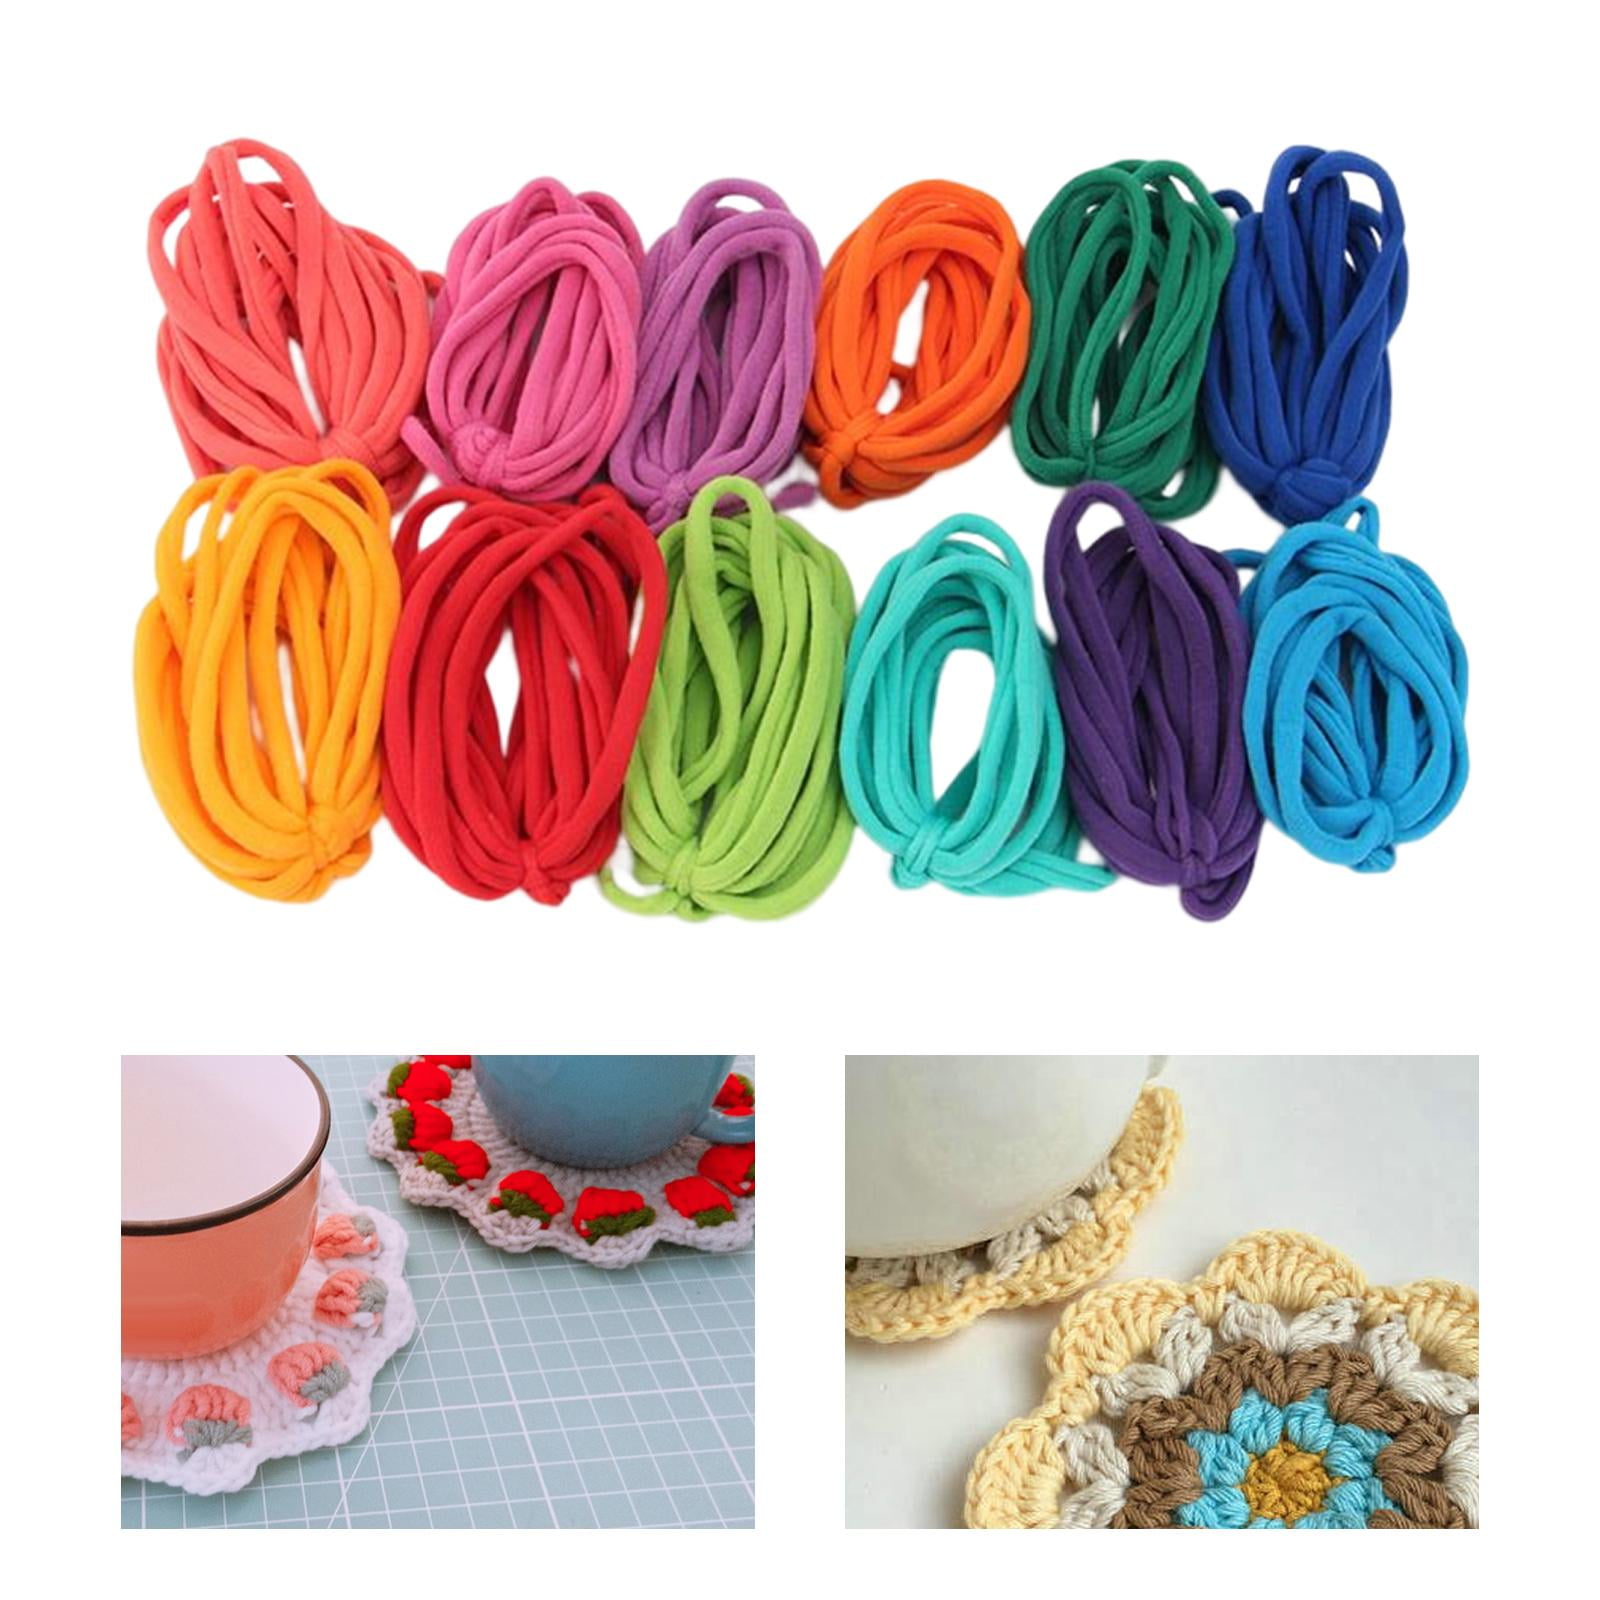 Weaving Loom Loops Potholder Loops Loom Loops Refills Multiple Colors  Weaving Loom Toys for Kids Adults Beginners DIY Crafts Supplies Gifts 12  Colors 192PCS 